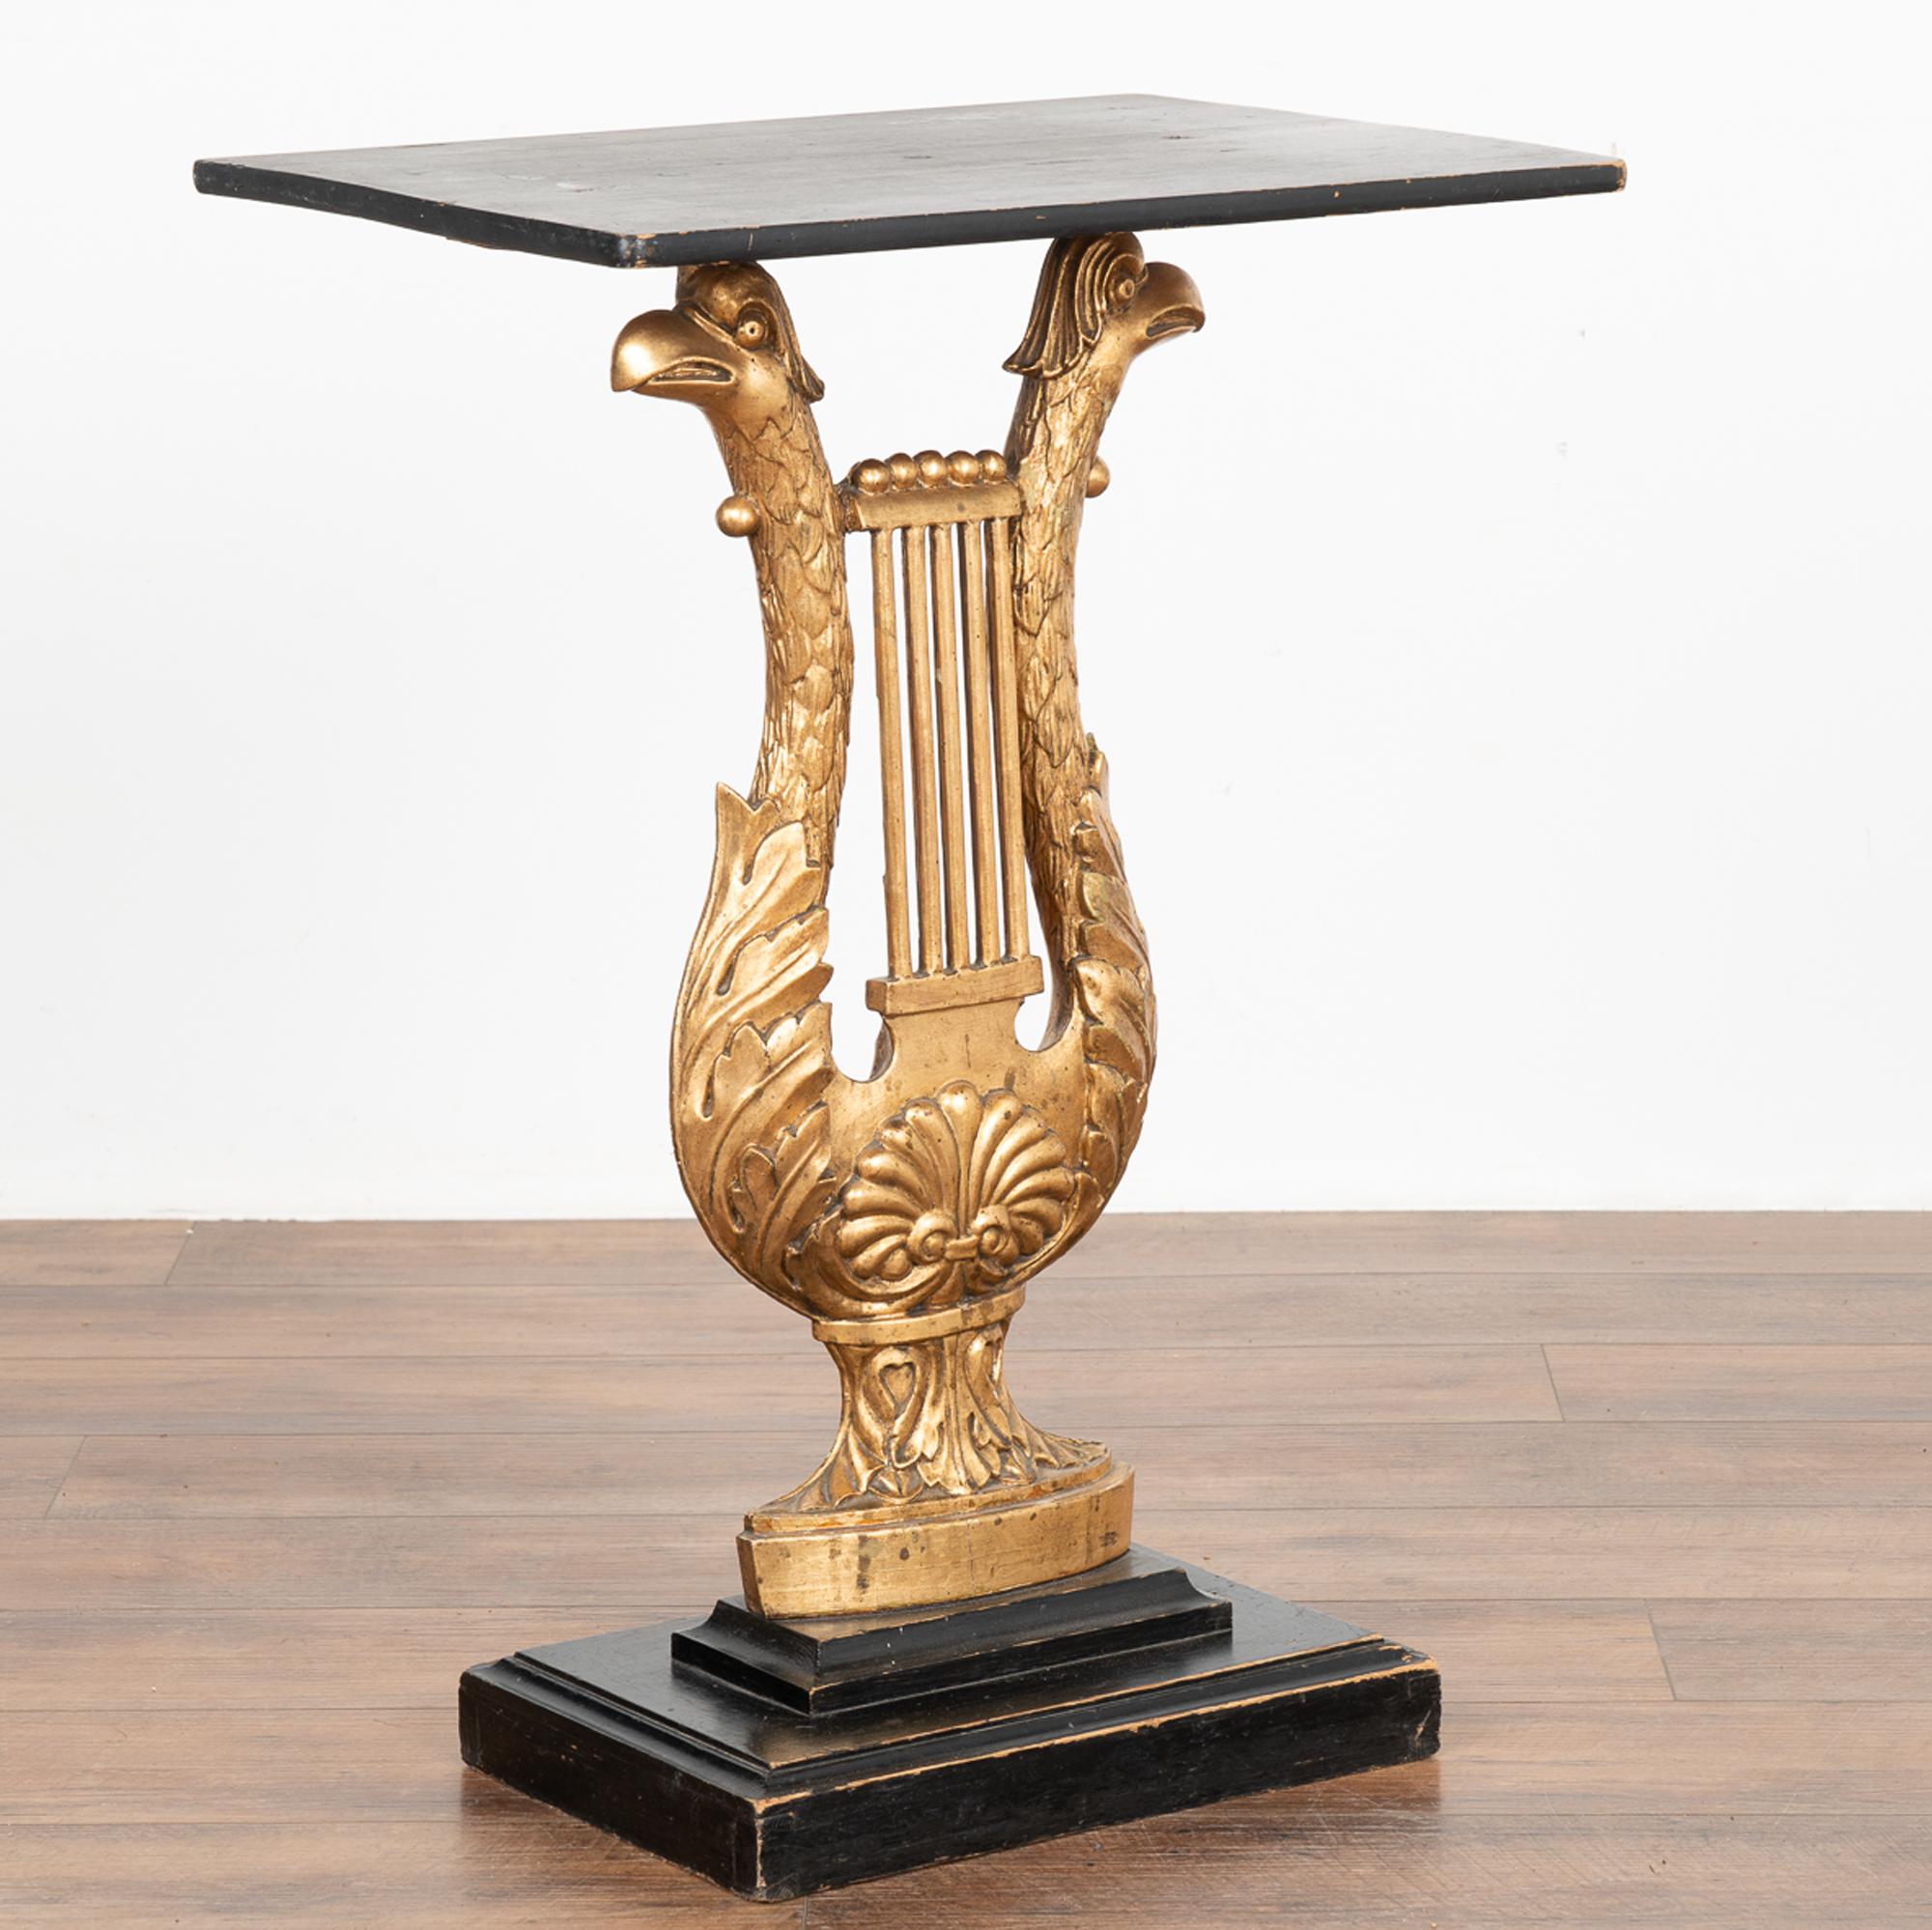 Des sculptures dramatiques de têtes d'aigle en forme de harpe forment la base de cette table console néoclassique de Suède.
La colonne centrale sculptée et peinte en or est complétée par le plateau et la base inférieure peints en noir.
Restauré,